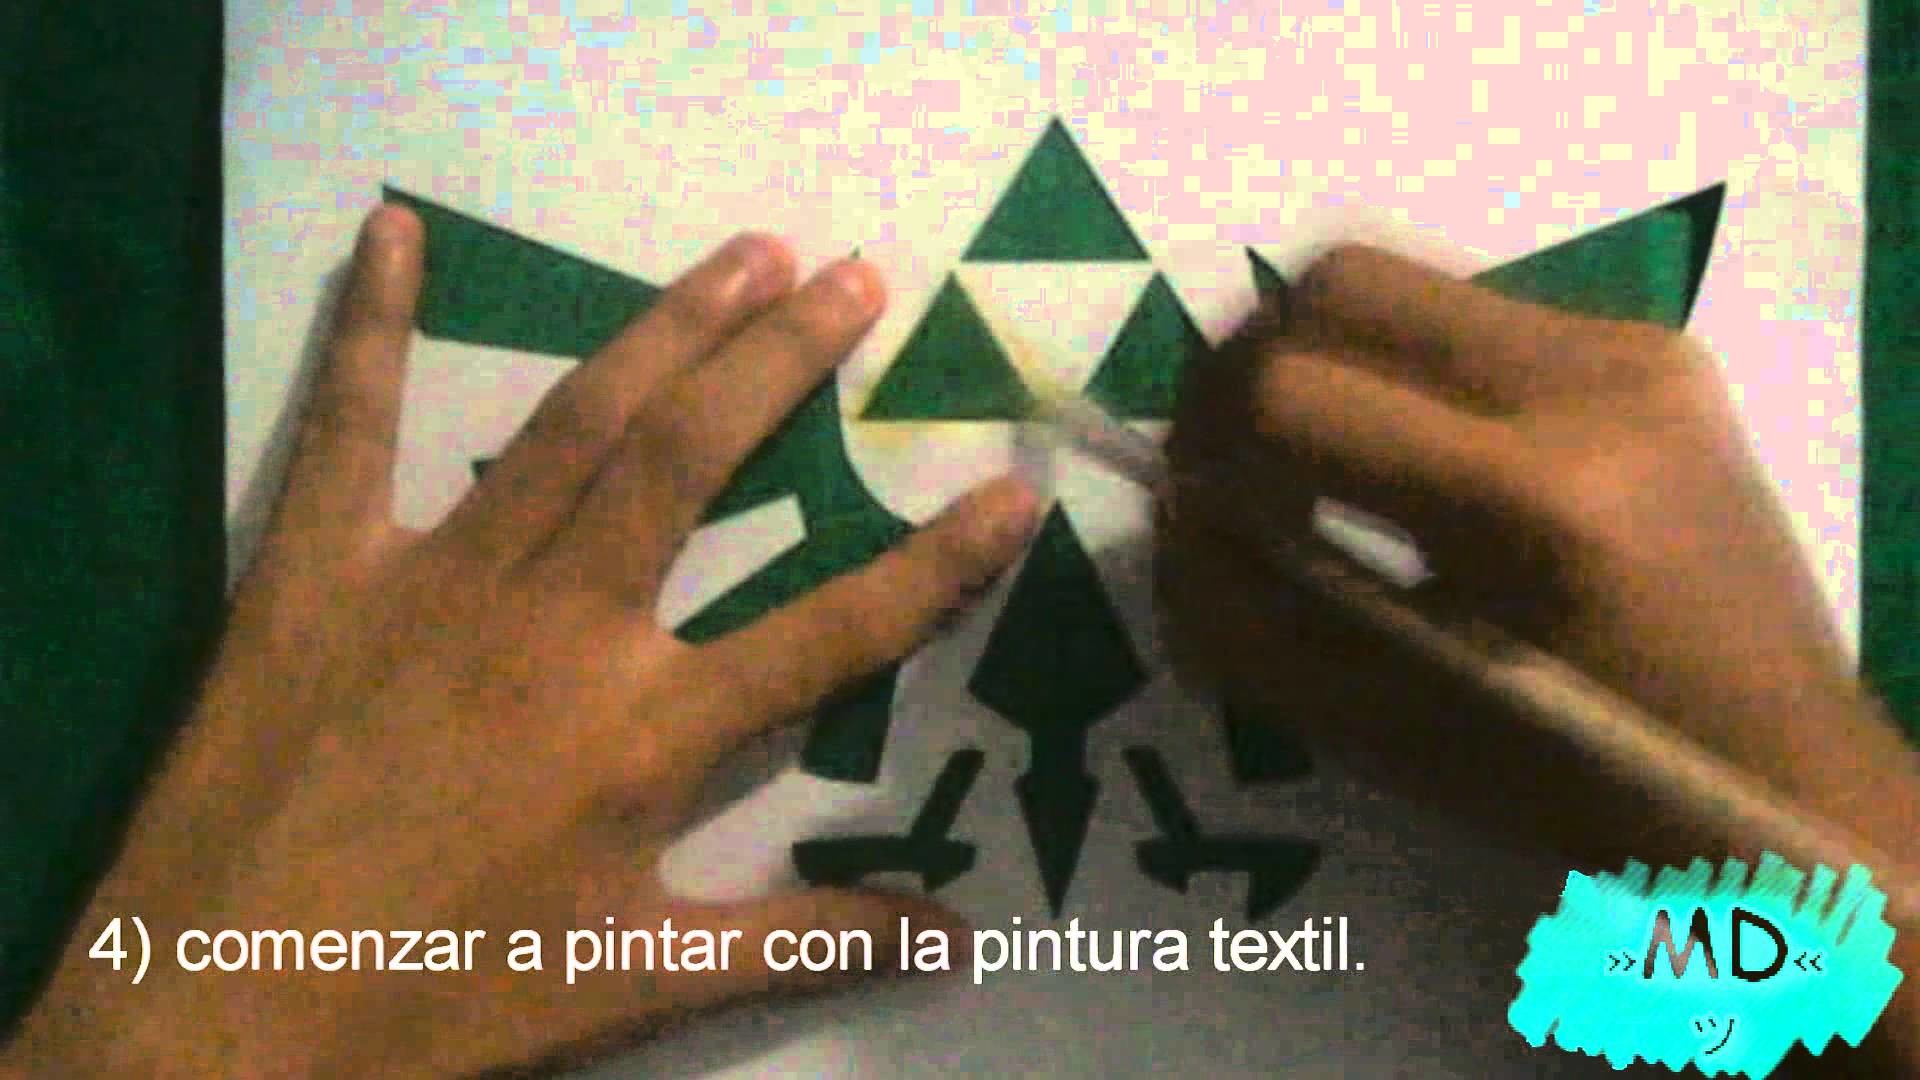 DIY➧ Pintar Playeras - Pintura textil y Acrilica 〈La trifuerza〉